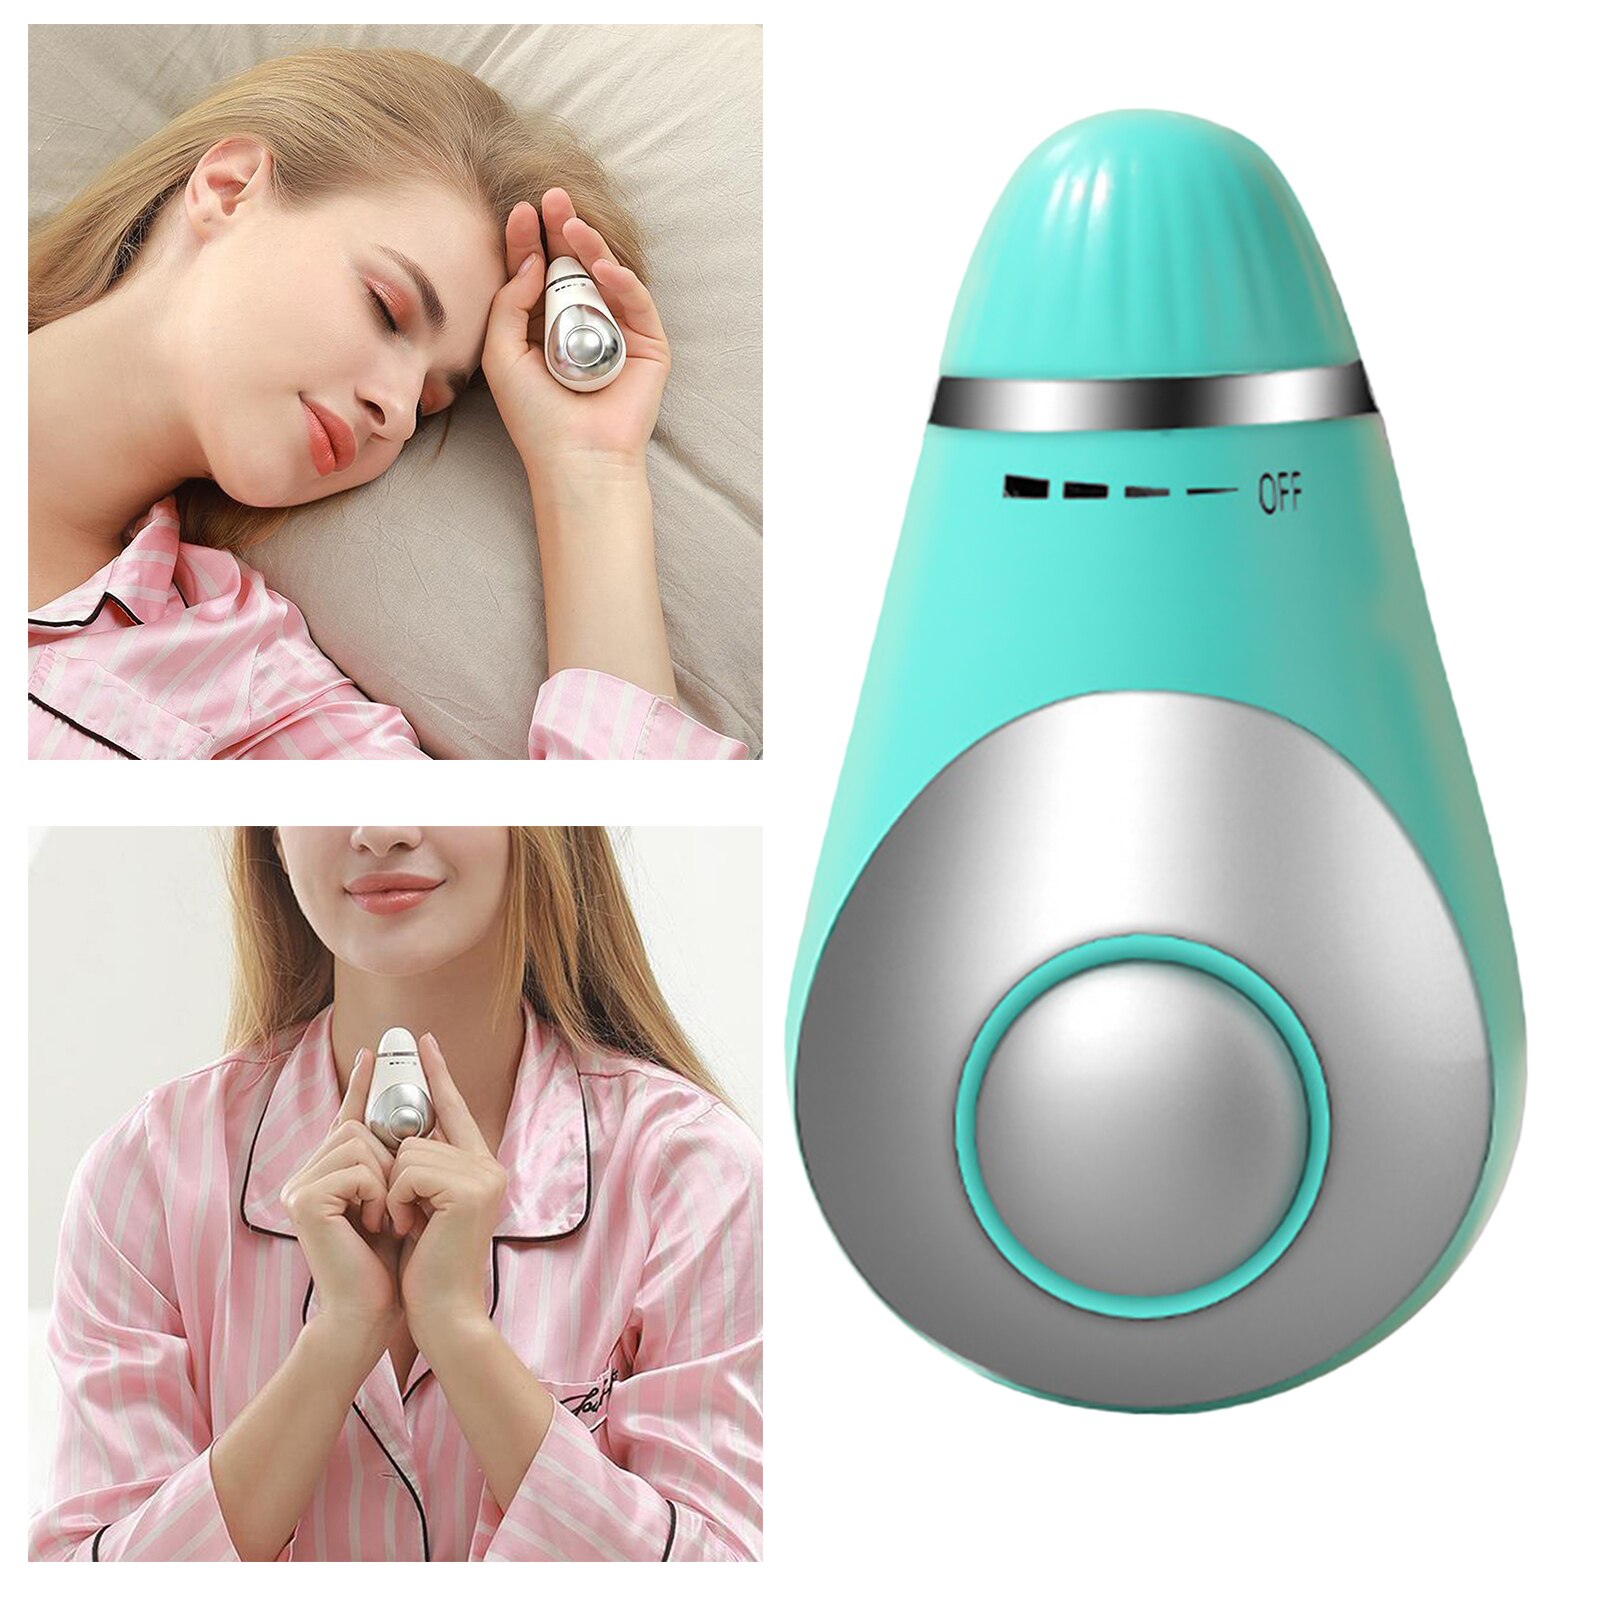 Bærbart håndholdt søvnhjælpemiddel, mikrostrøm intelligent søvnenhed hurtigt værktøj til søvnhjælp